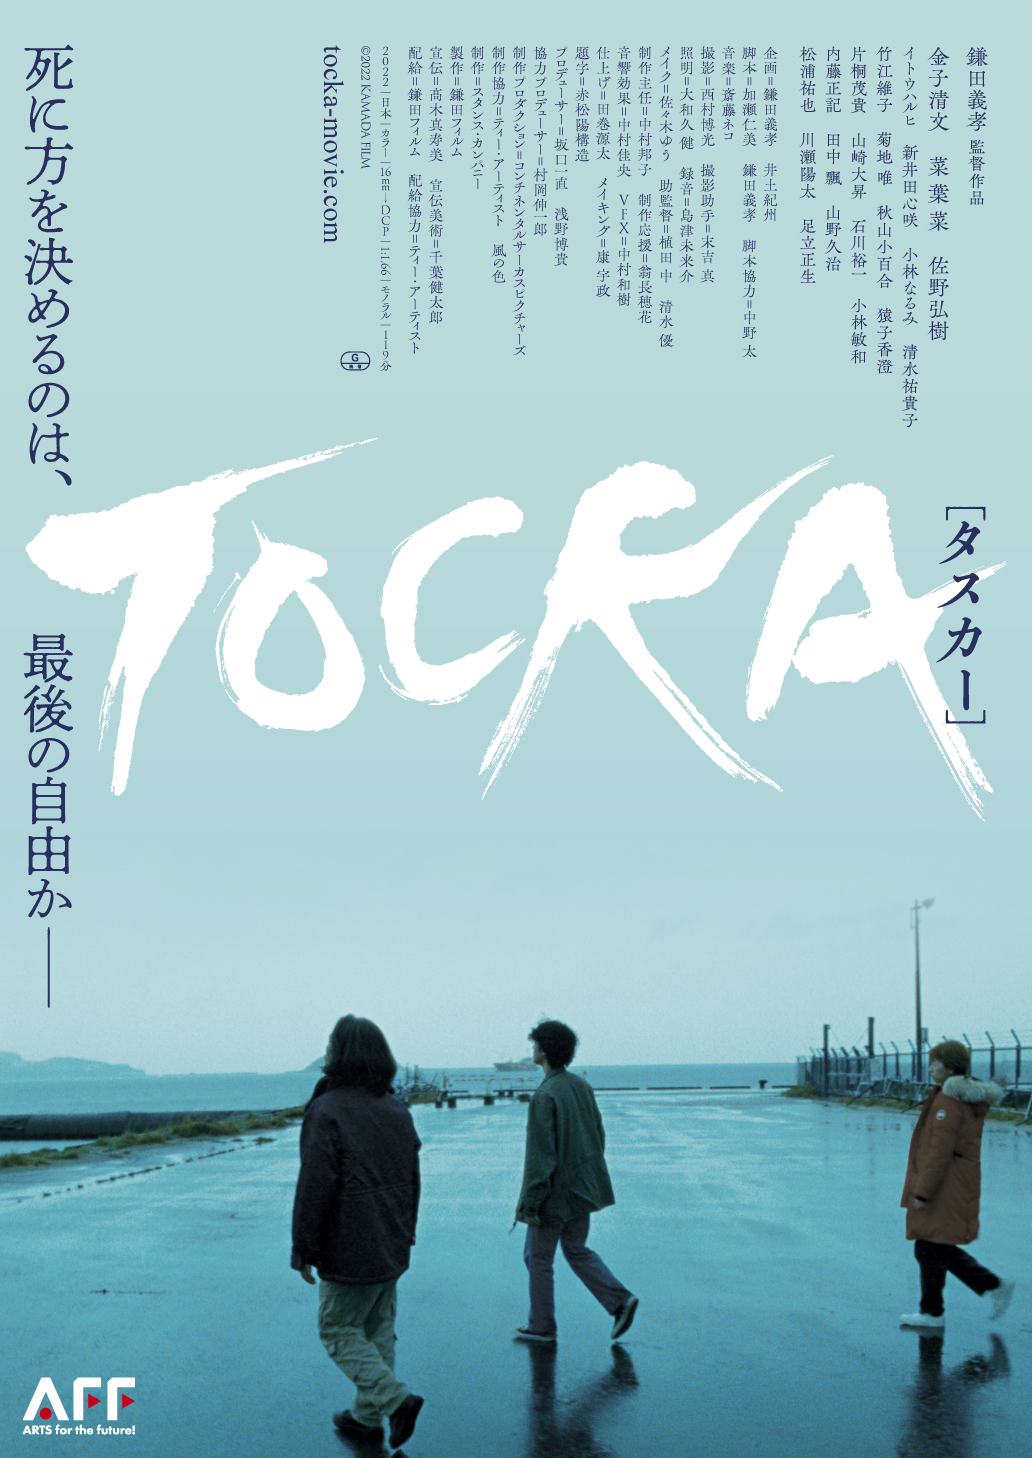 映画『TOCKA タスカー』「理由は日々、変わっていくモノ」鎌田義孝監督インタビュー